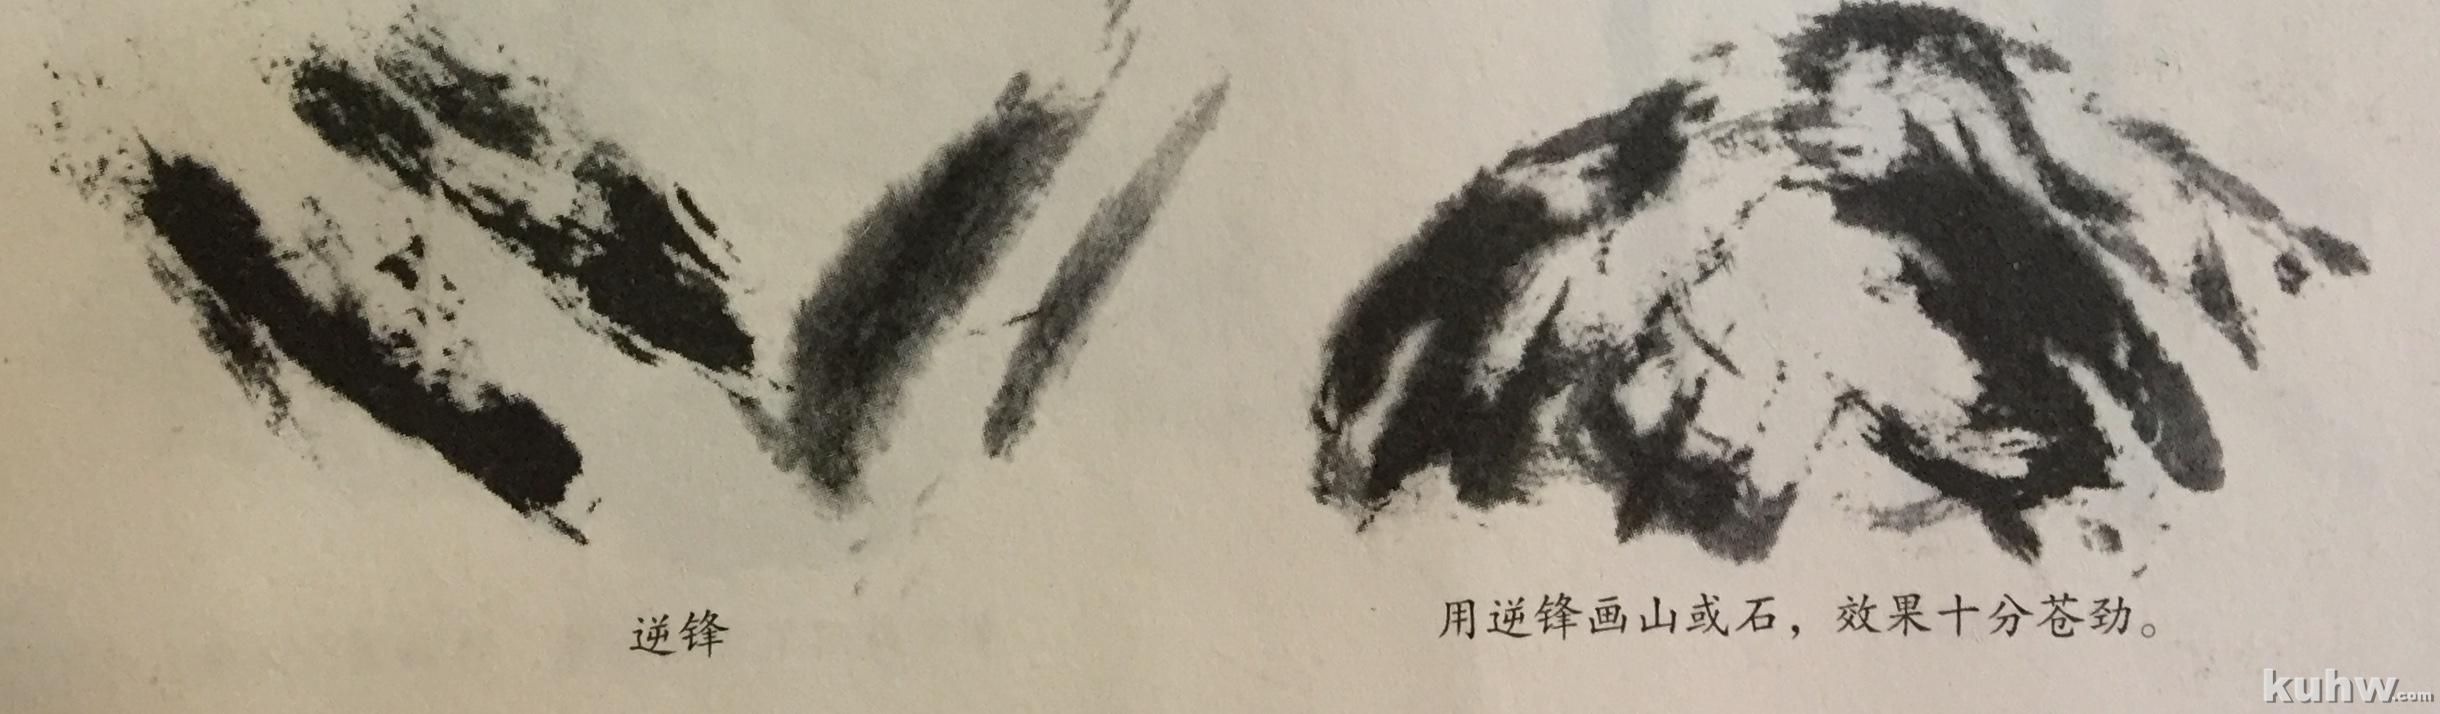 中国画的笔法